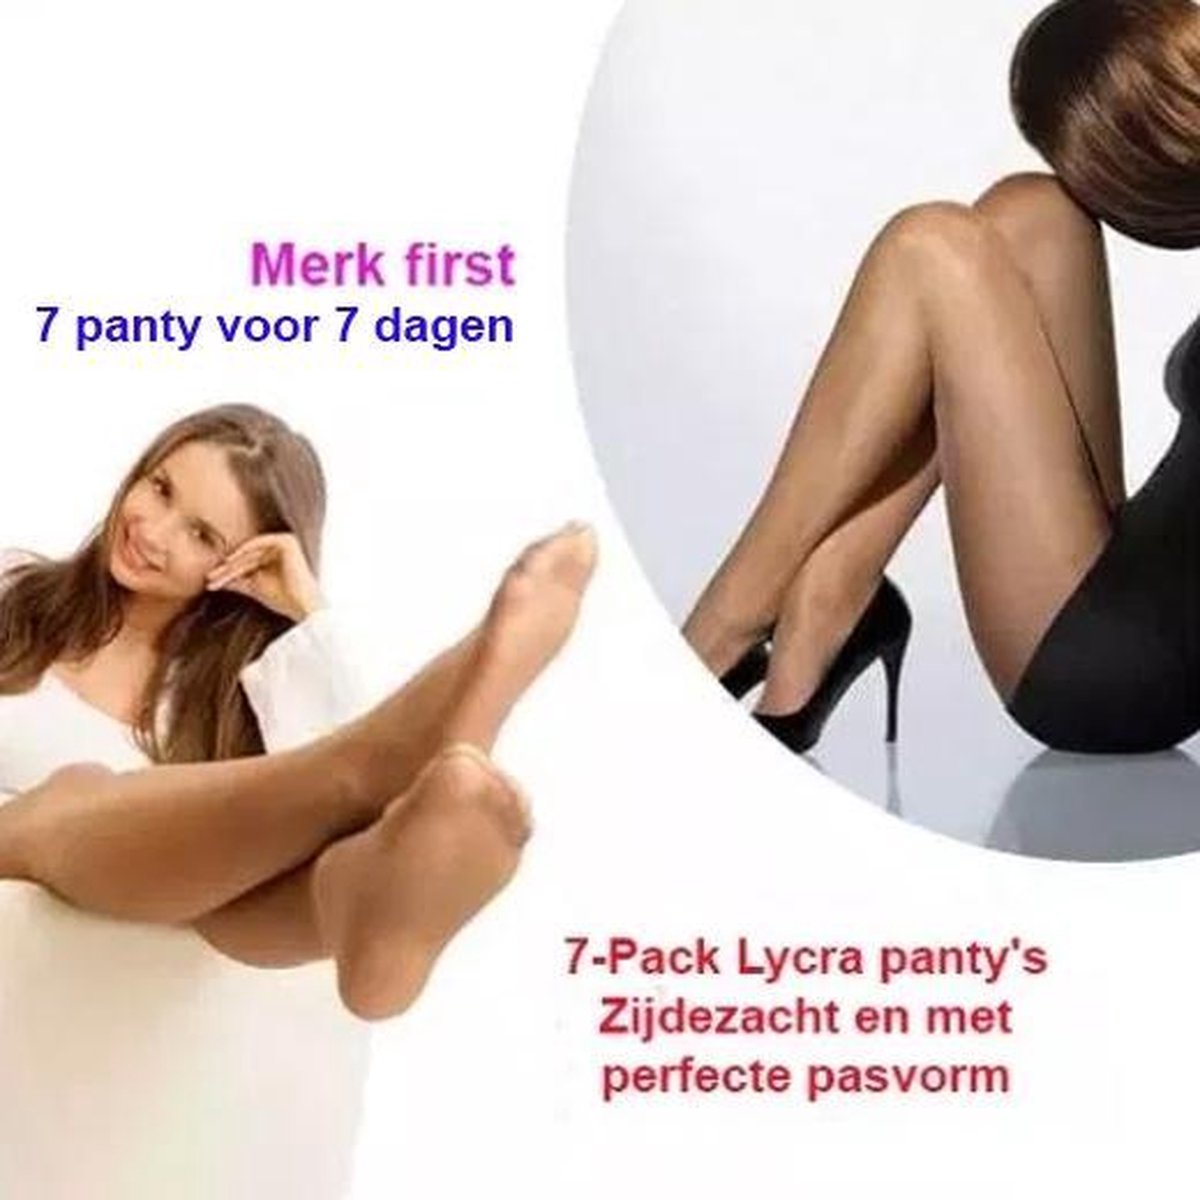 7-Pack Lycra panty's Zijdezacht en met perfecte pasvorm | Kleur Zwart 36-40